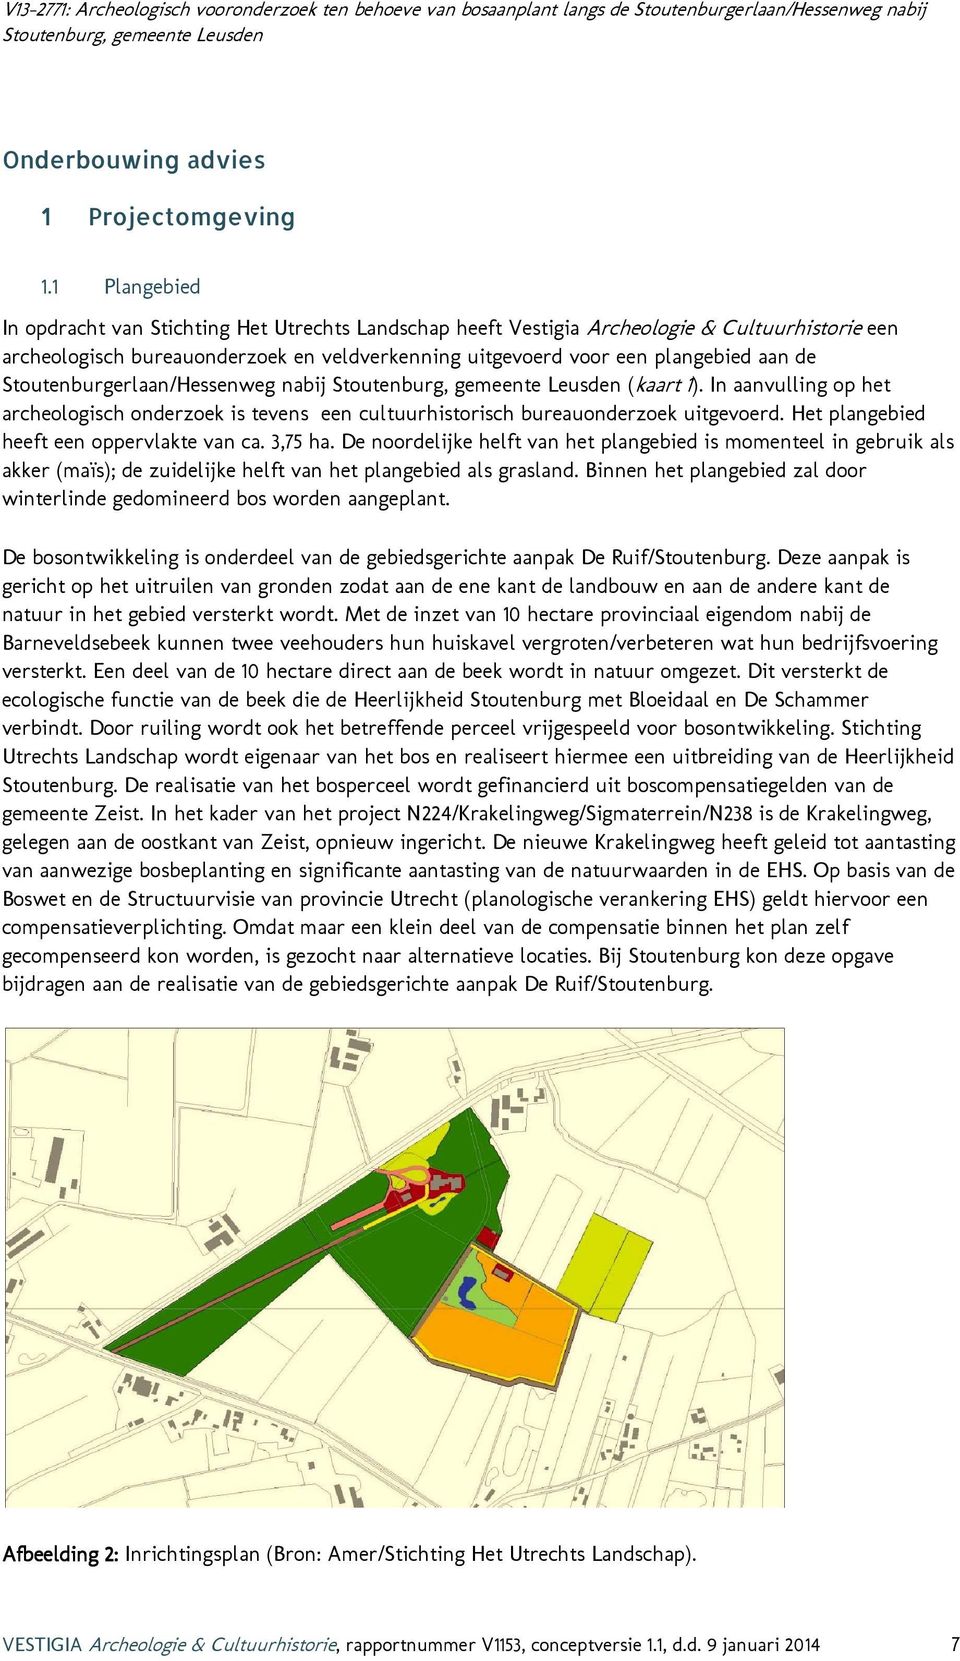 Stoutenburgerlaan/Hessenweg nabij (kaart 1). In aanvulling op het archeologisch onderzoek is tevens een cultuurhistorisch bureauonderzoek uitgevoerd. Het plangebied heeft een oppervlakte van ca.